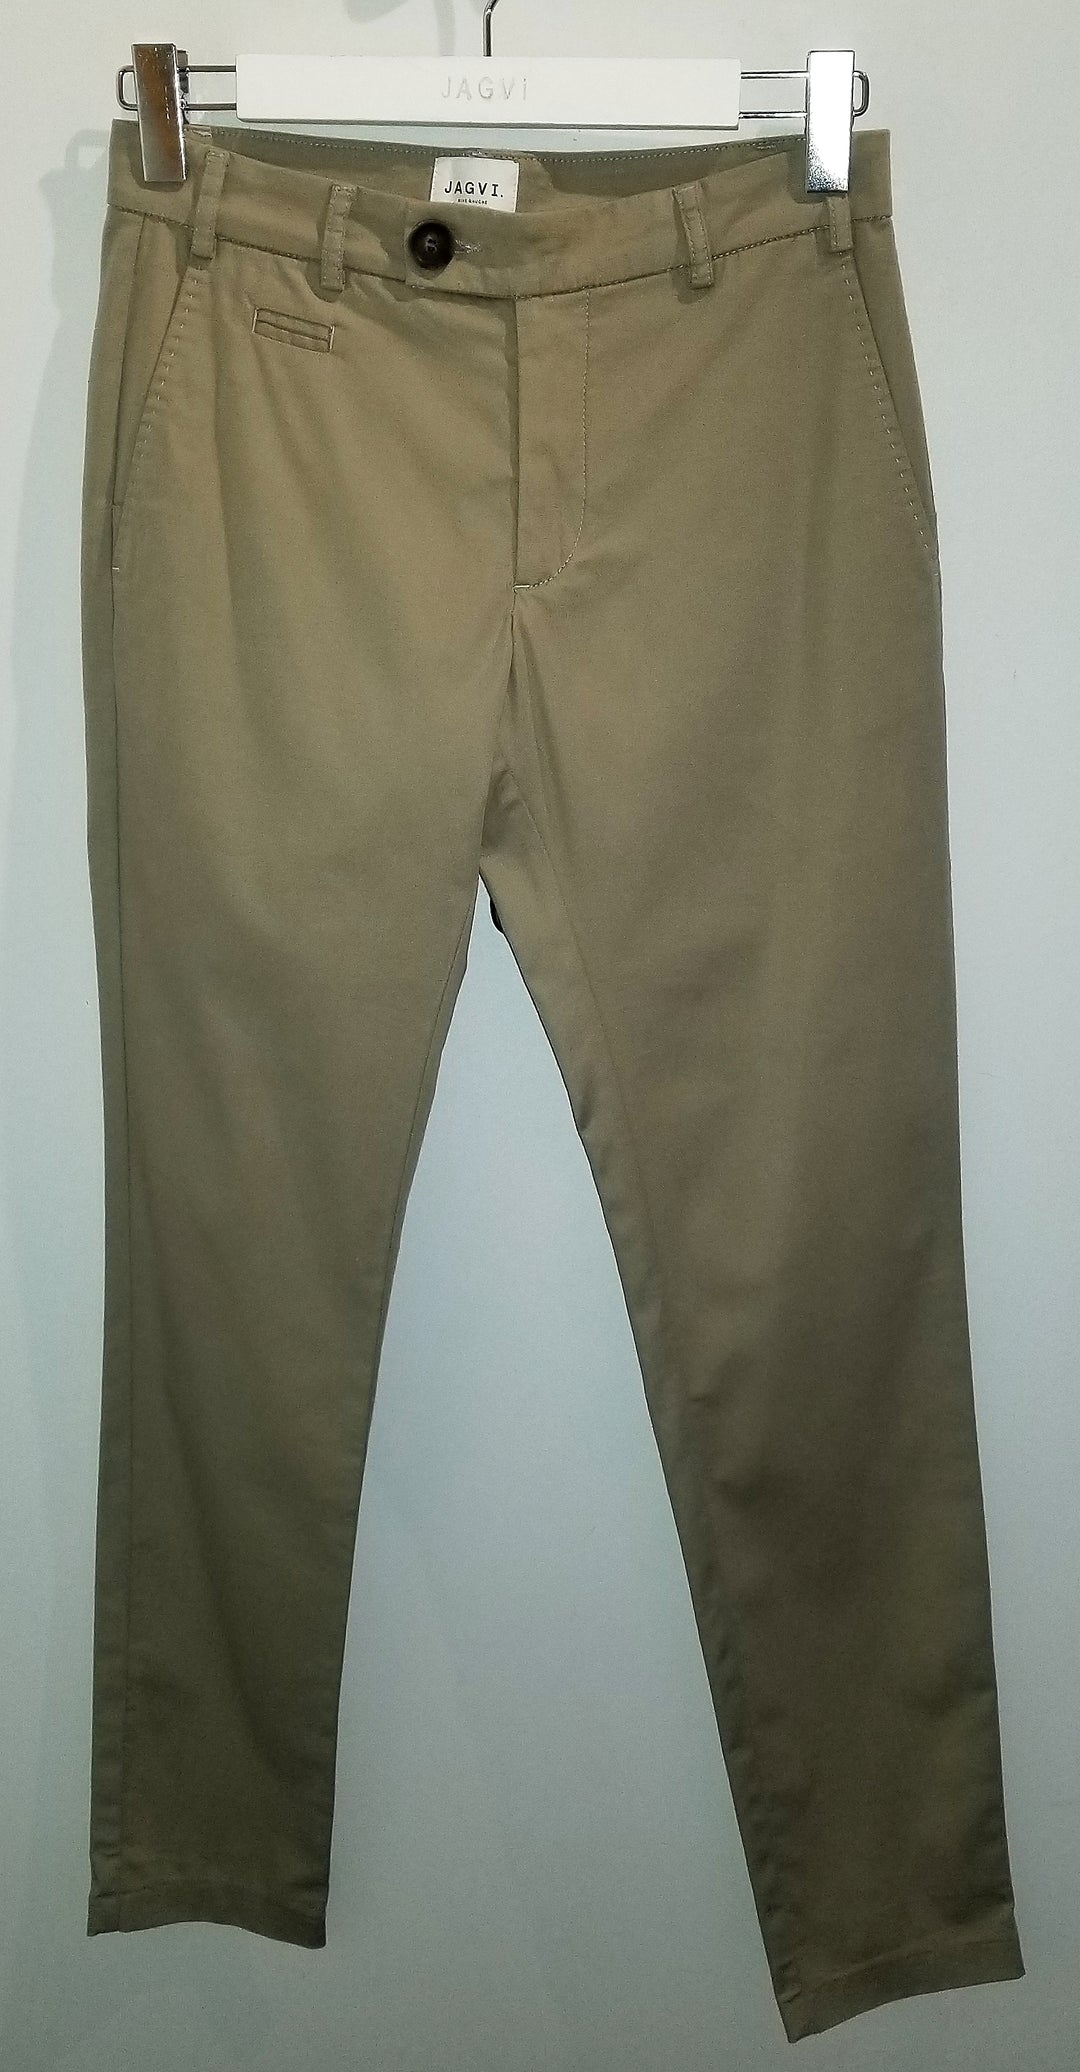 Light khaki organic cotton pants